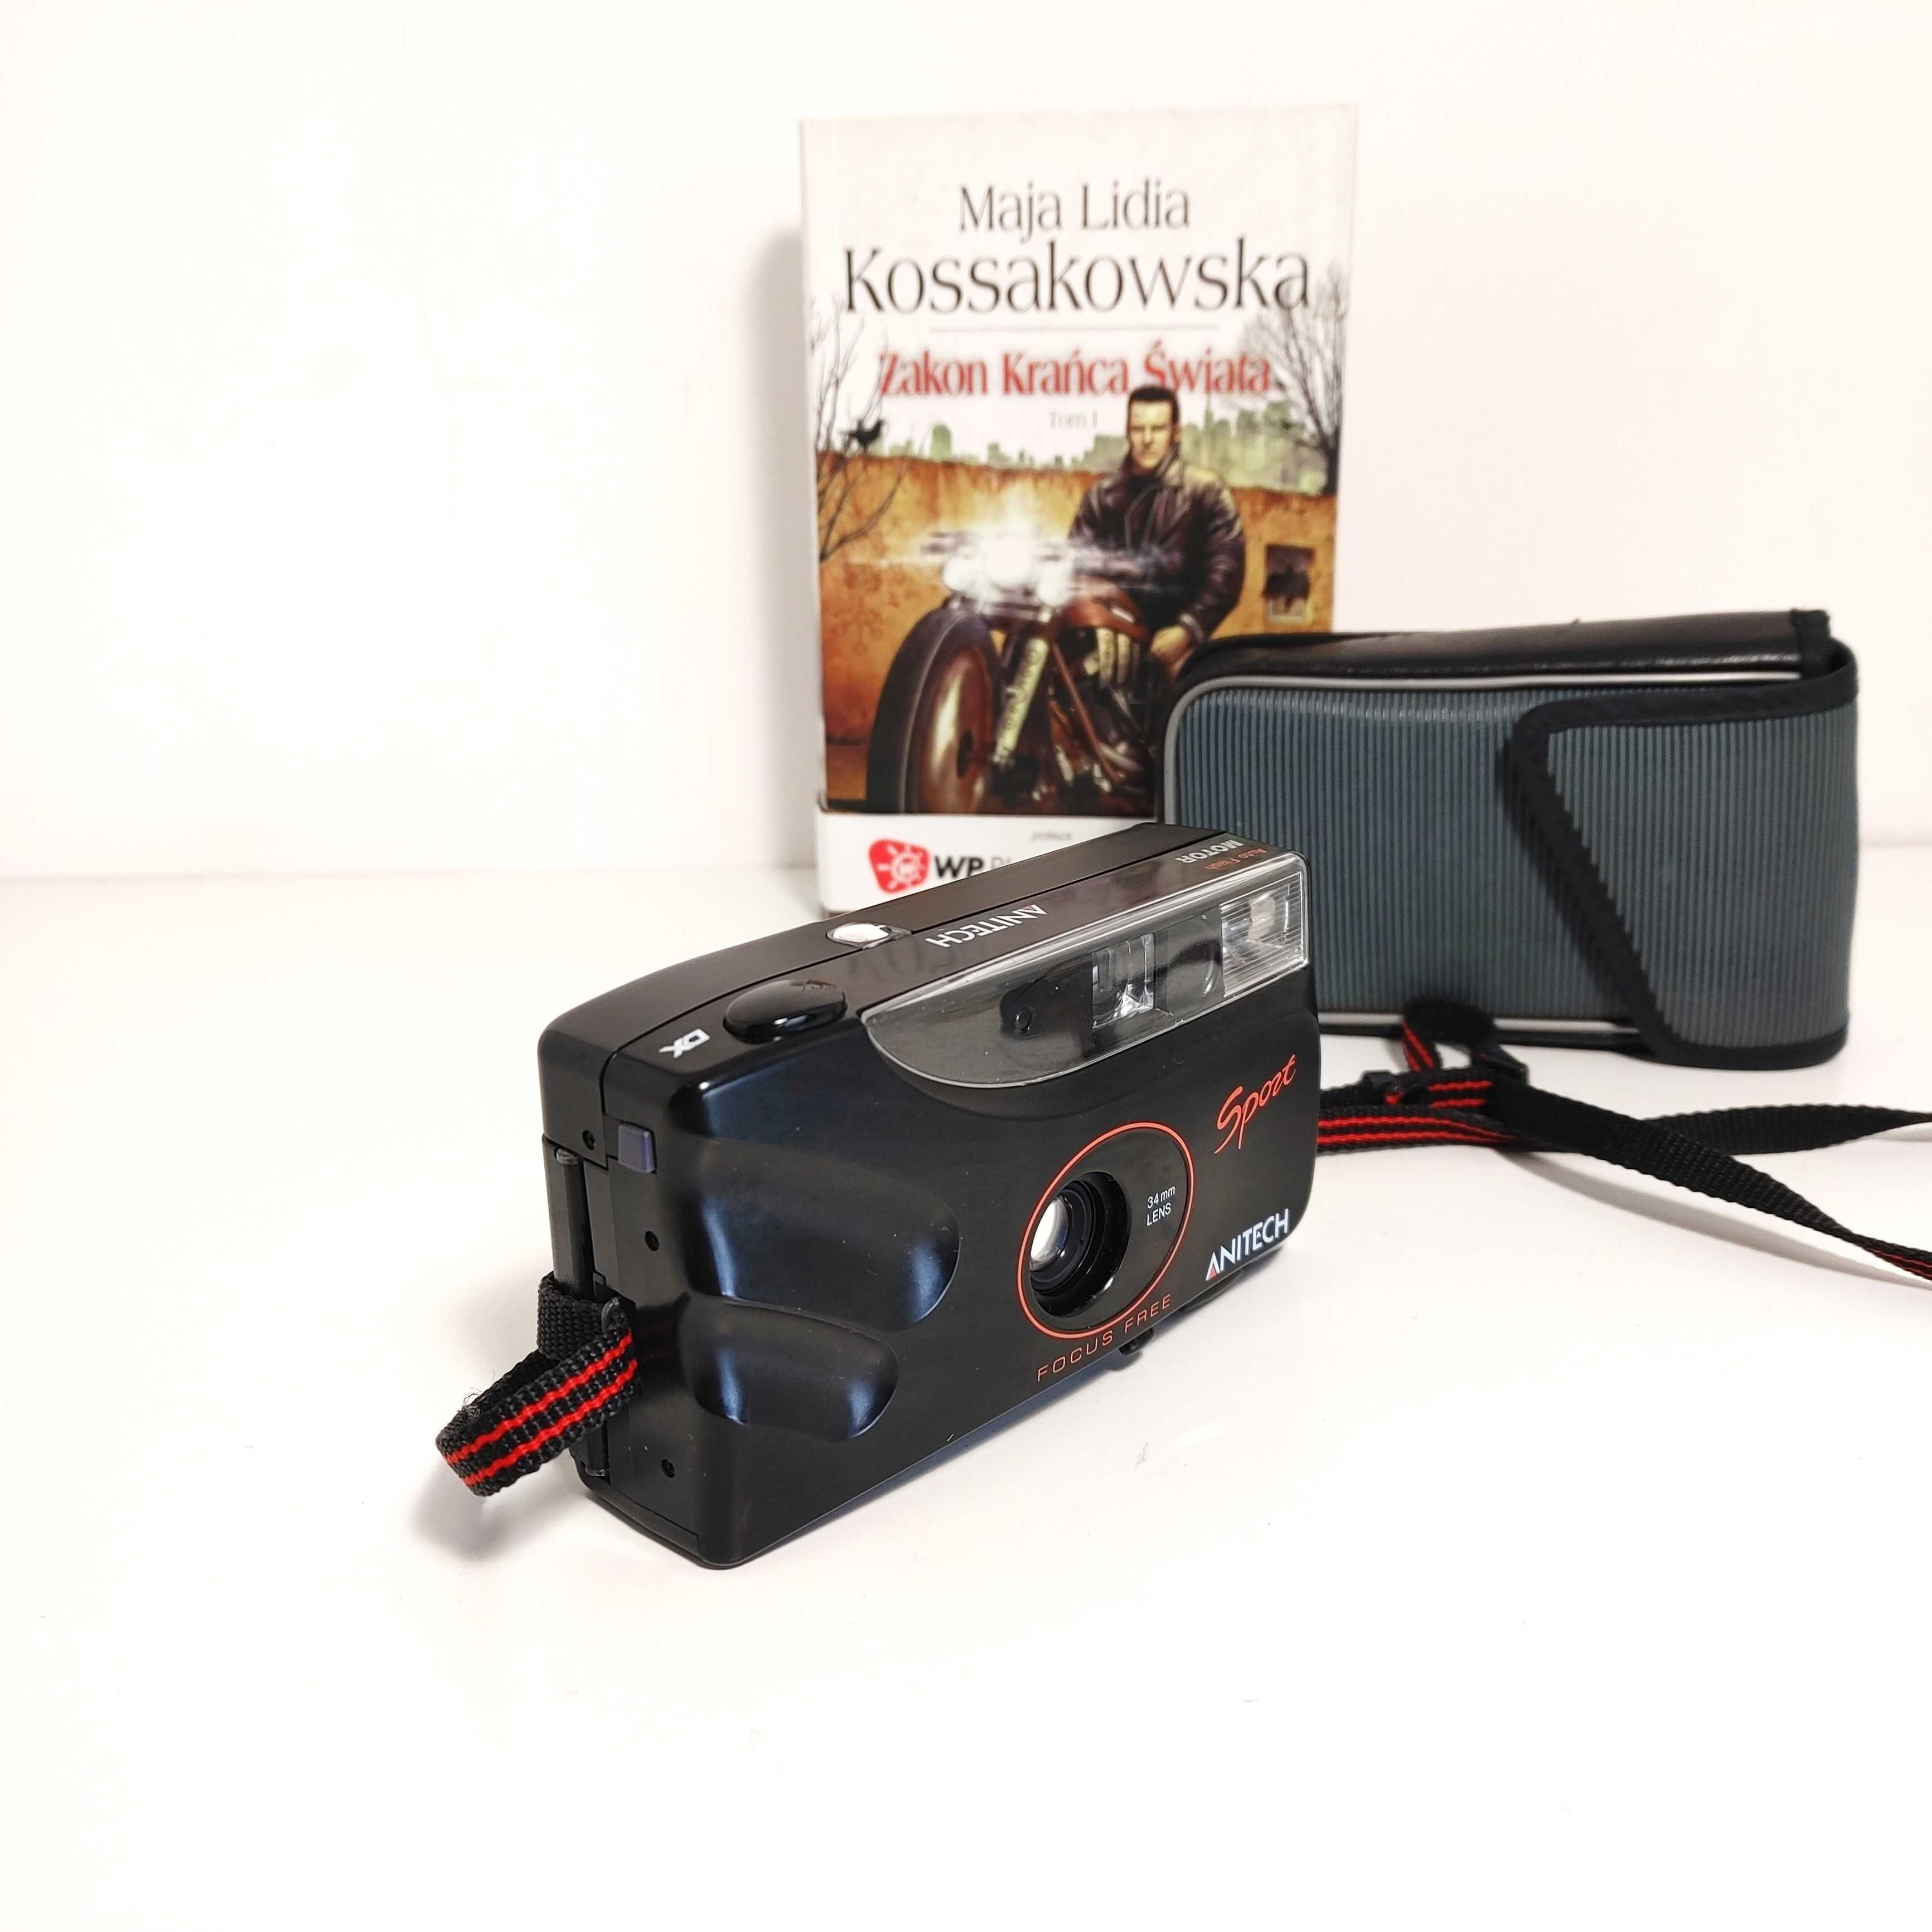 Analogowy kompaktowy aparat fotograficzny ANITECH Sport dla aktywnych